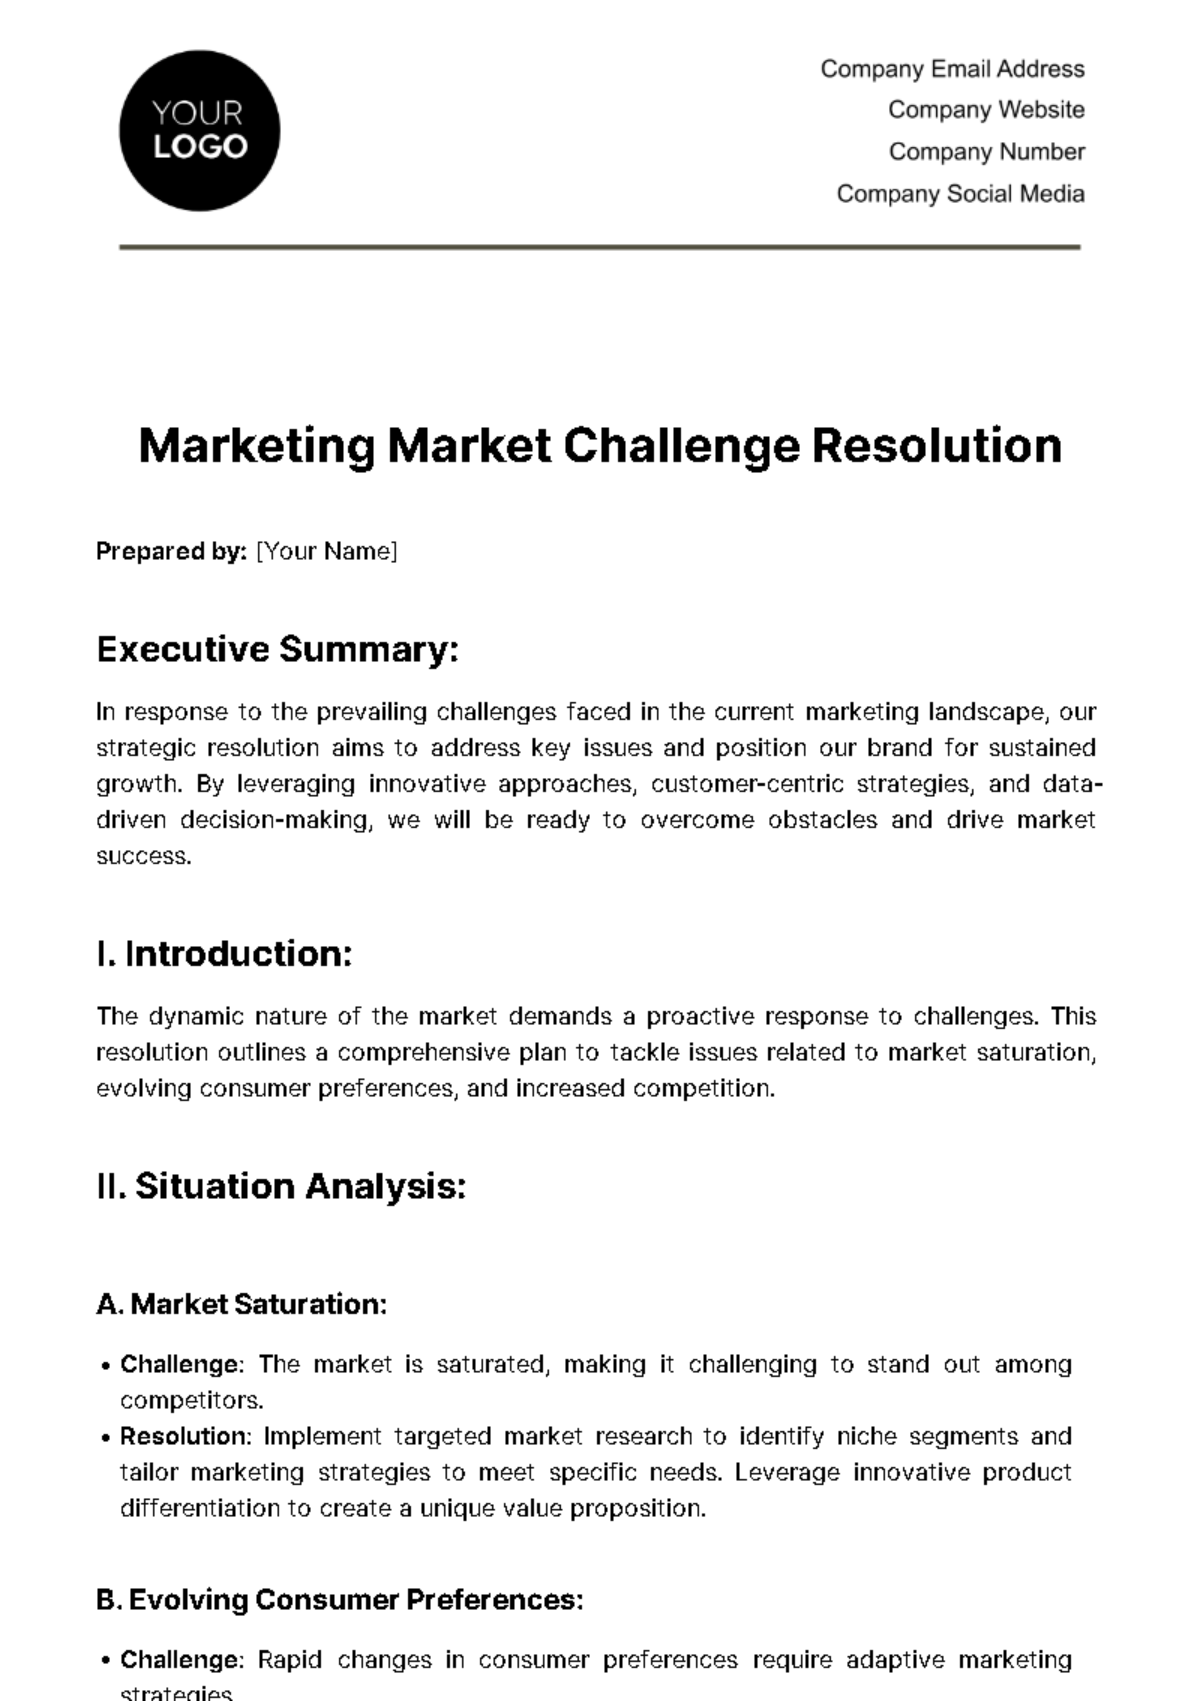 Marketing Market Challenge Resolution Template